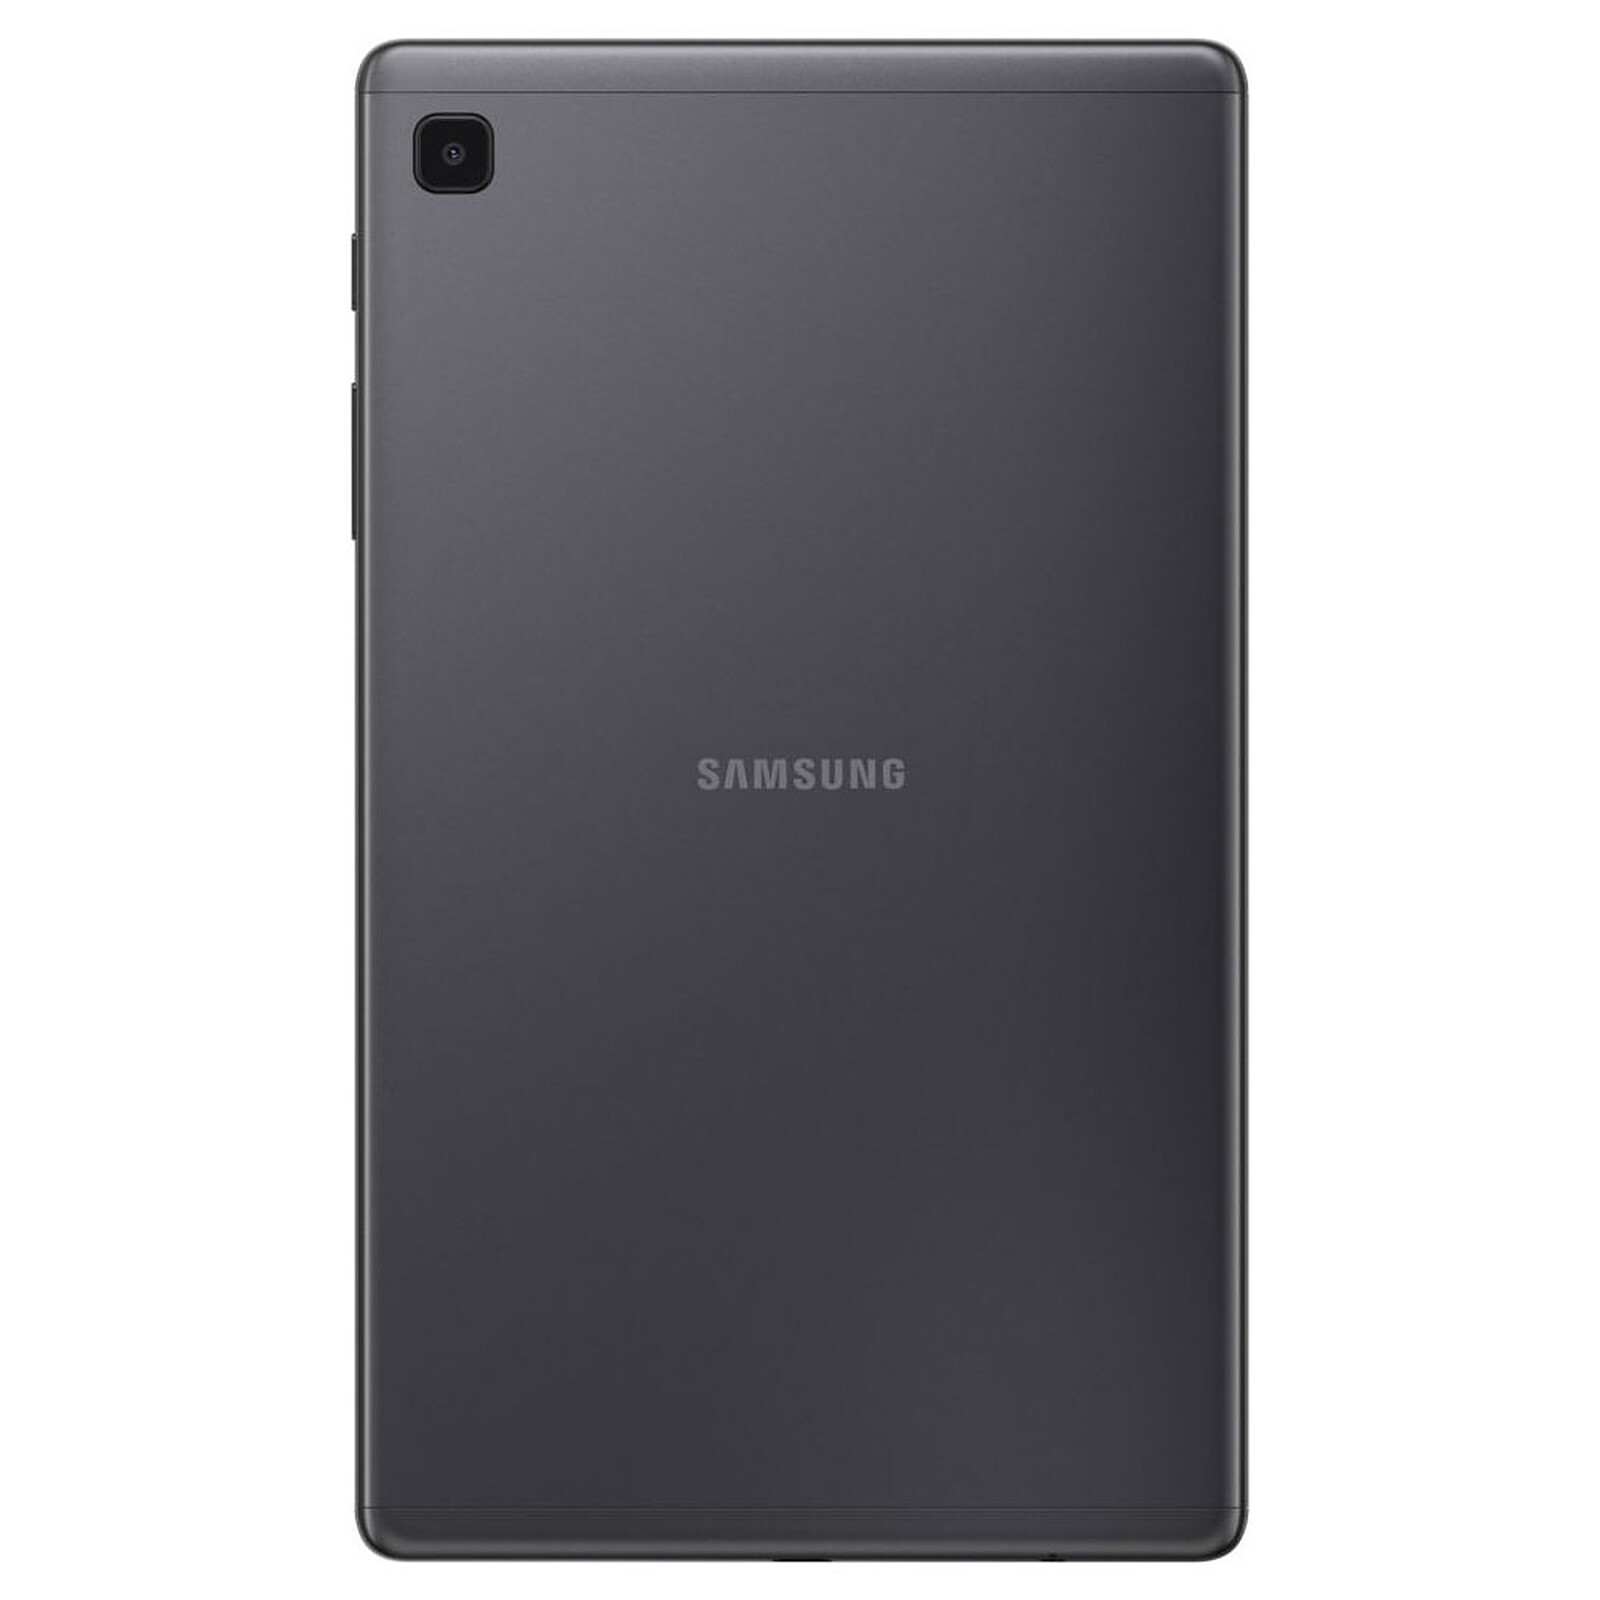 SAMSUNG Tablette tactile A7 Lite 8.7 pouces - 32 Go - Gris anthracite pas  cher 